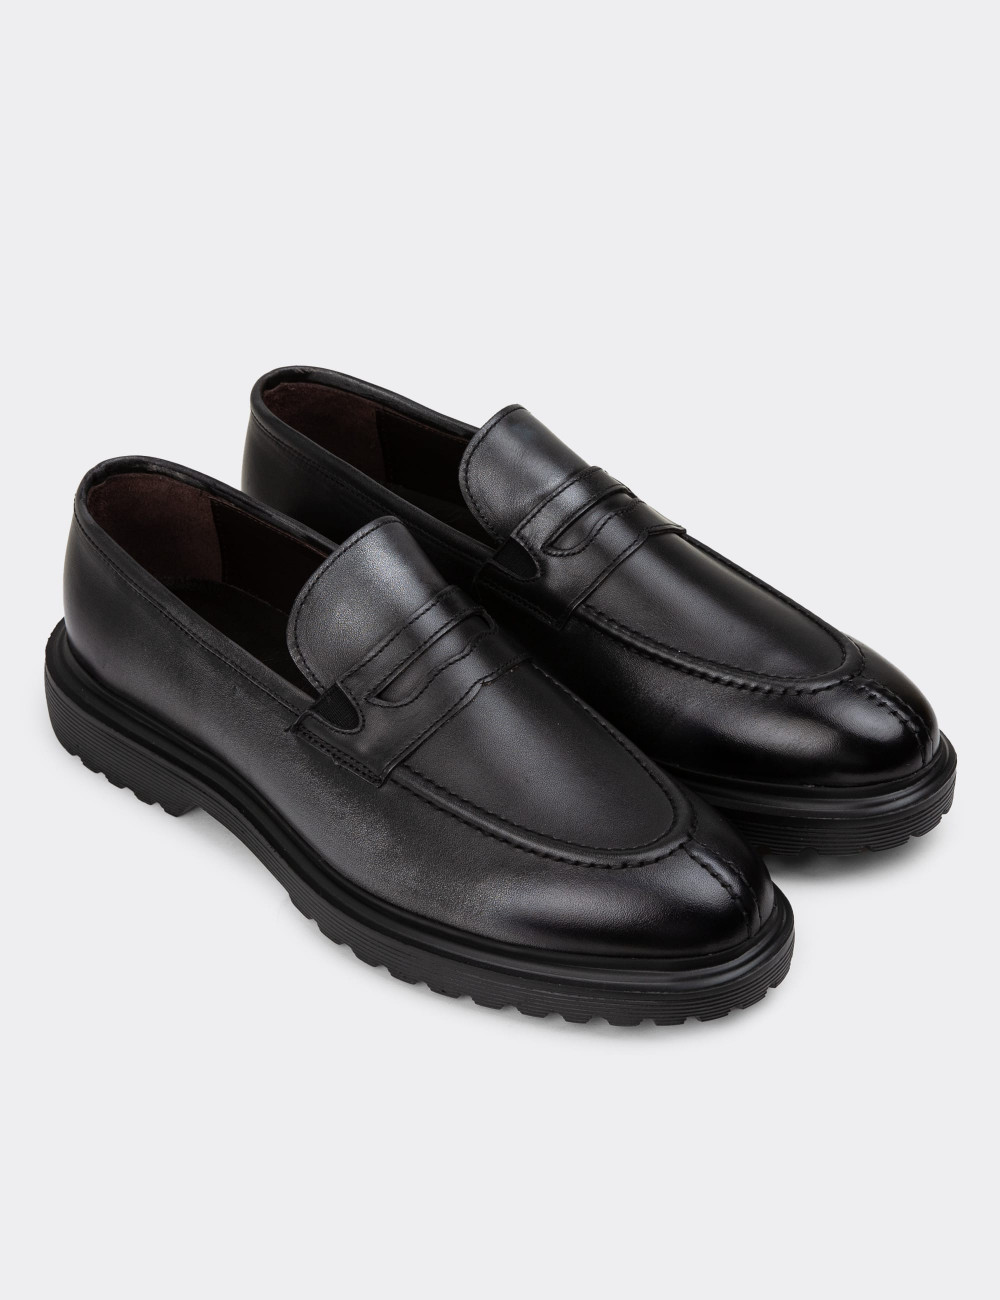 Hakiki Deri Vintage Gri Erkek Loafer Ayakkabı - 01878MGRIE01